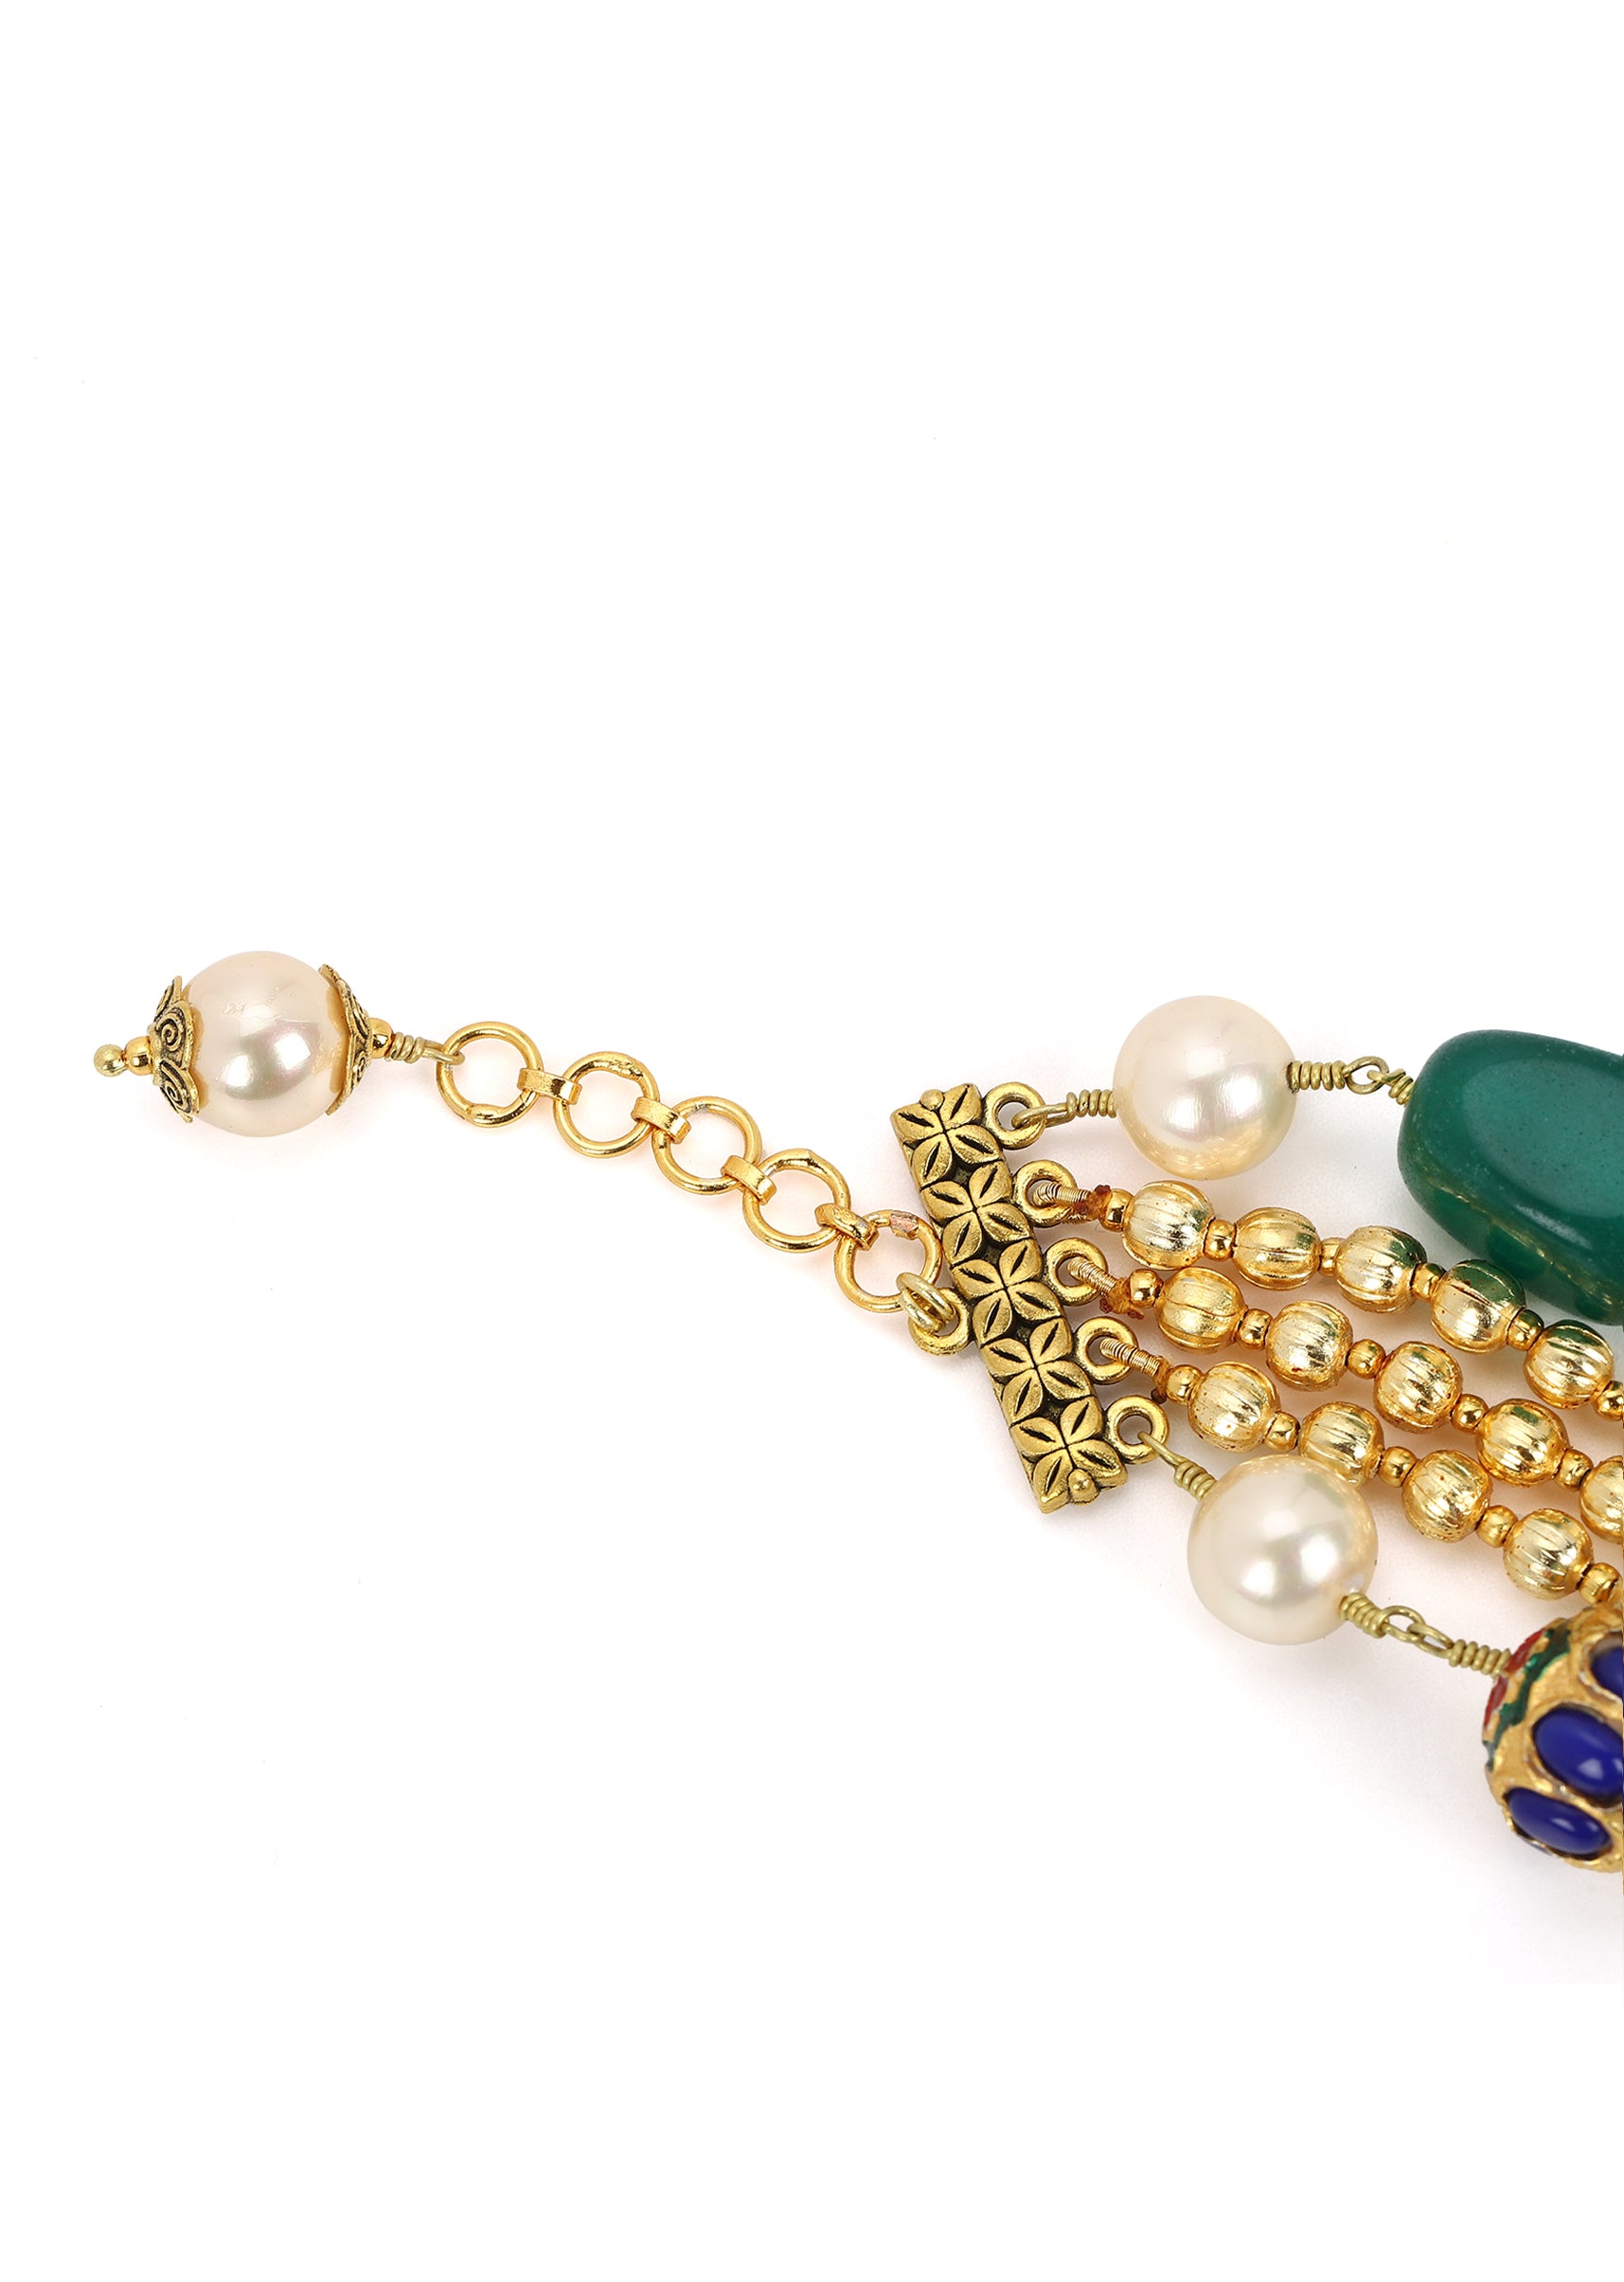 Kairi Wrist Trinket Bracelet at Kamakhyaa by House Of Heer. This item is Alloy Metal, Beaded Jewellery, Bracelets, Festive Wear, Free Size, Gemstone, jewelry, Multicolor, Natural, Pearl, rakhis & lumbas, Textured